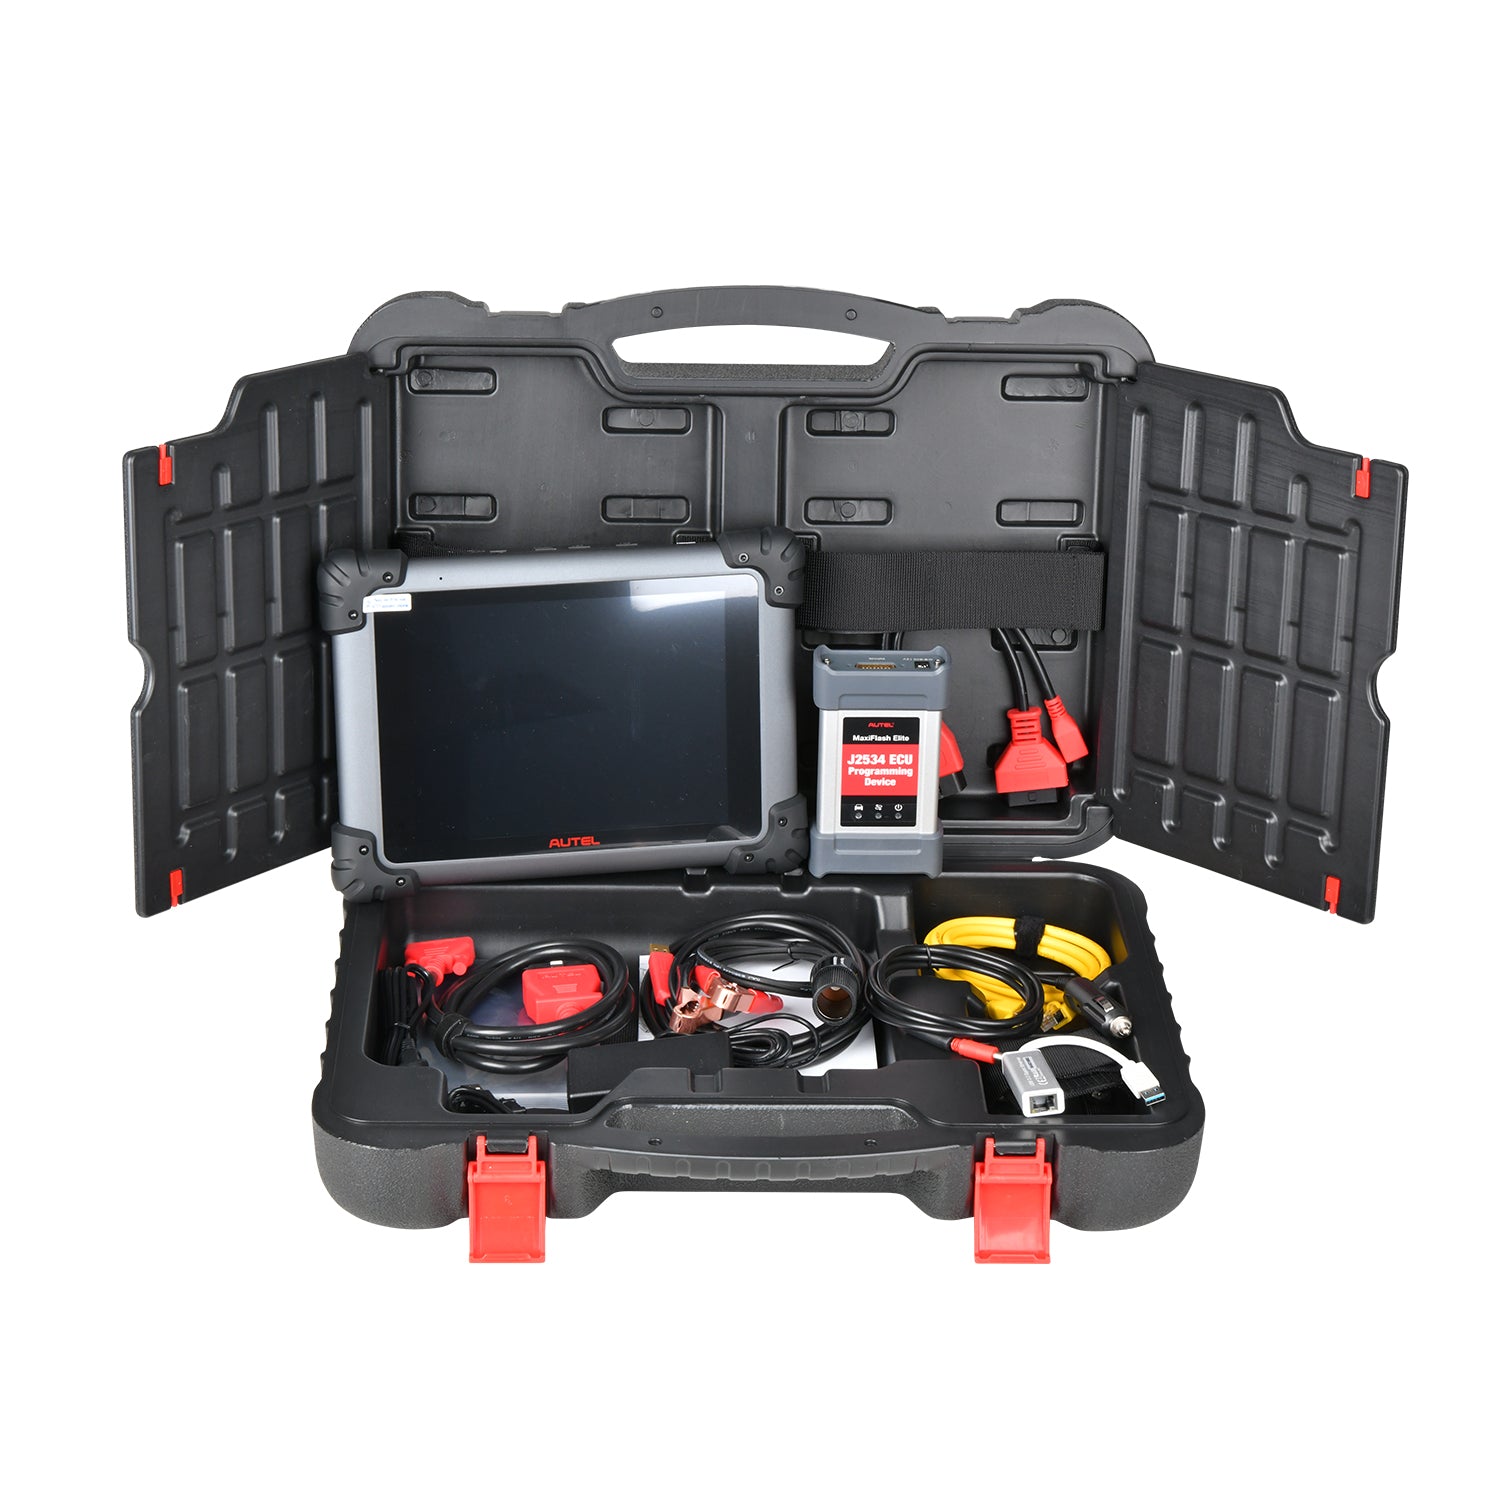 Autel MaxiSYS 908 Commercial Vehicle Diagnostics Tool w/ Free Autel Trailer  PLC